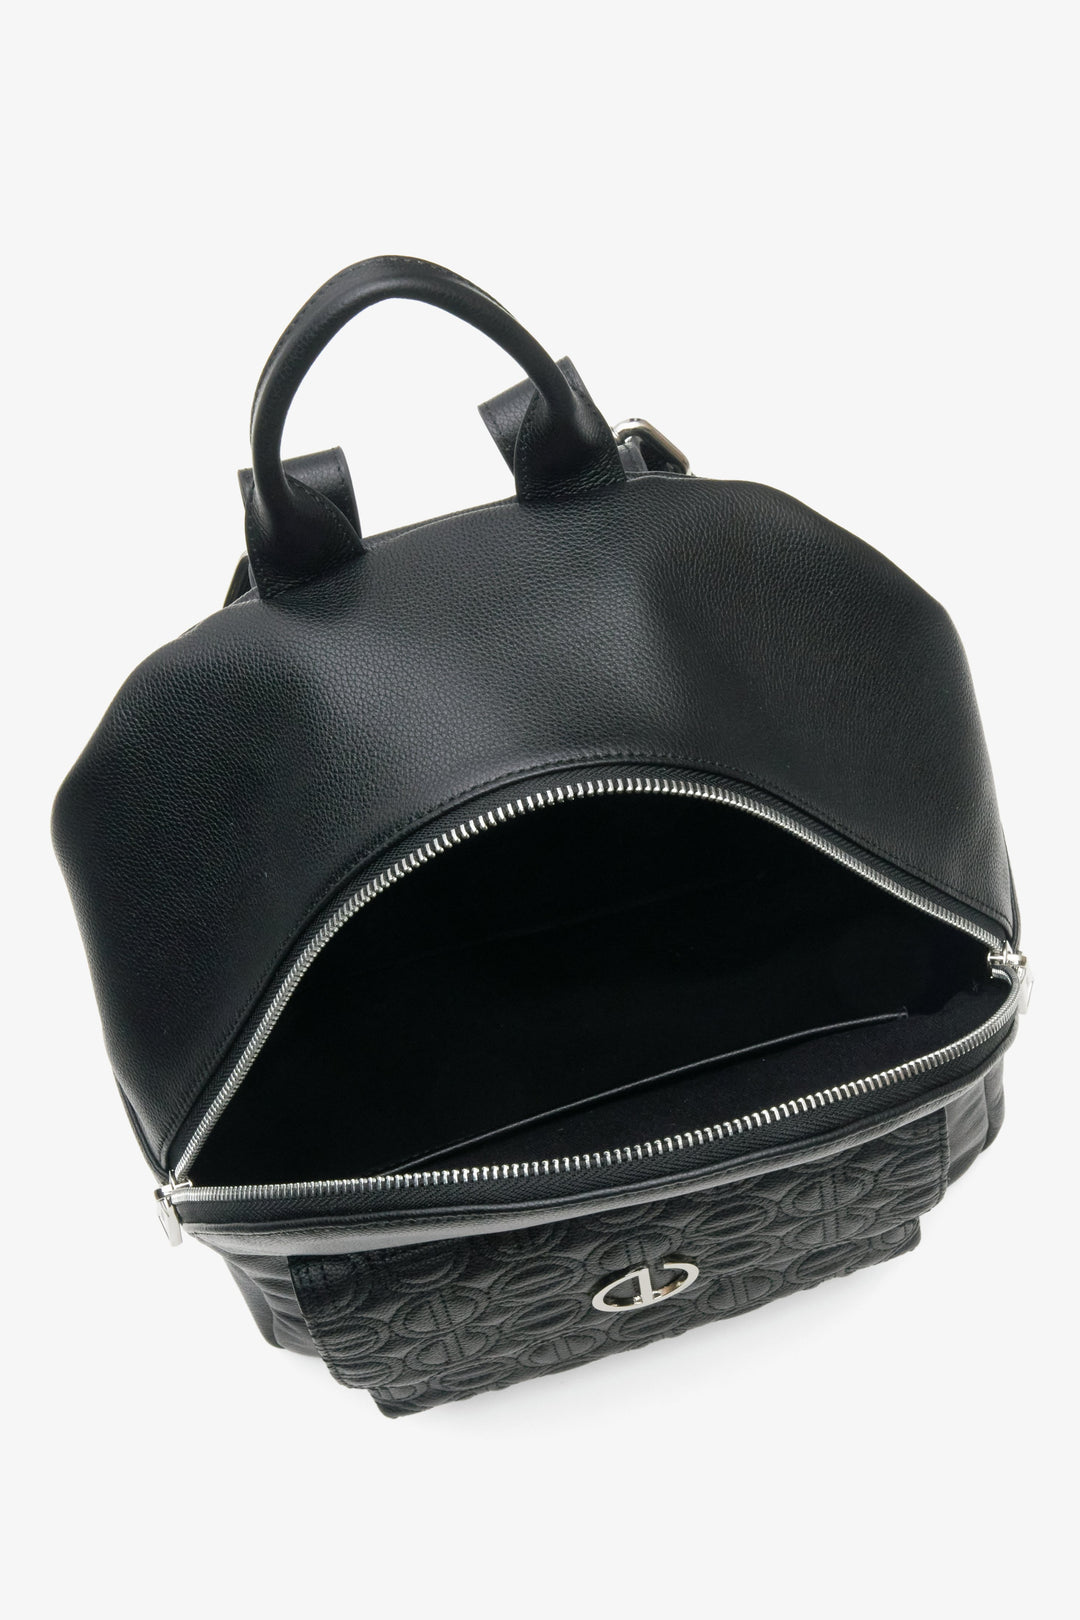 Damski czarny plecak Estro - zbliżenie na wnętrze modelu,